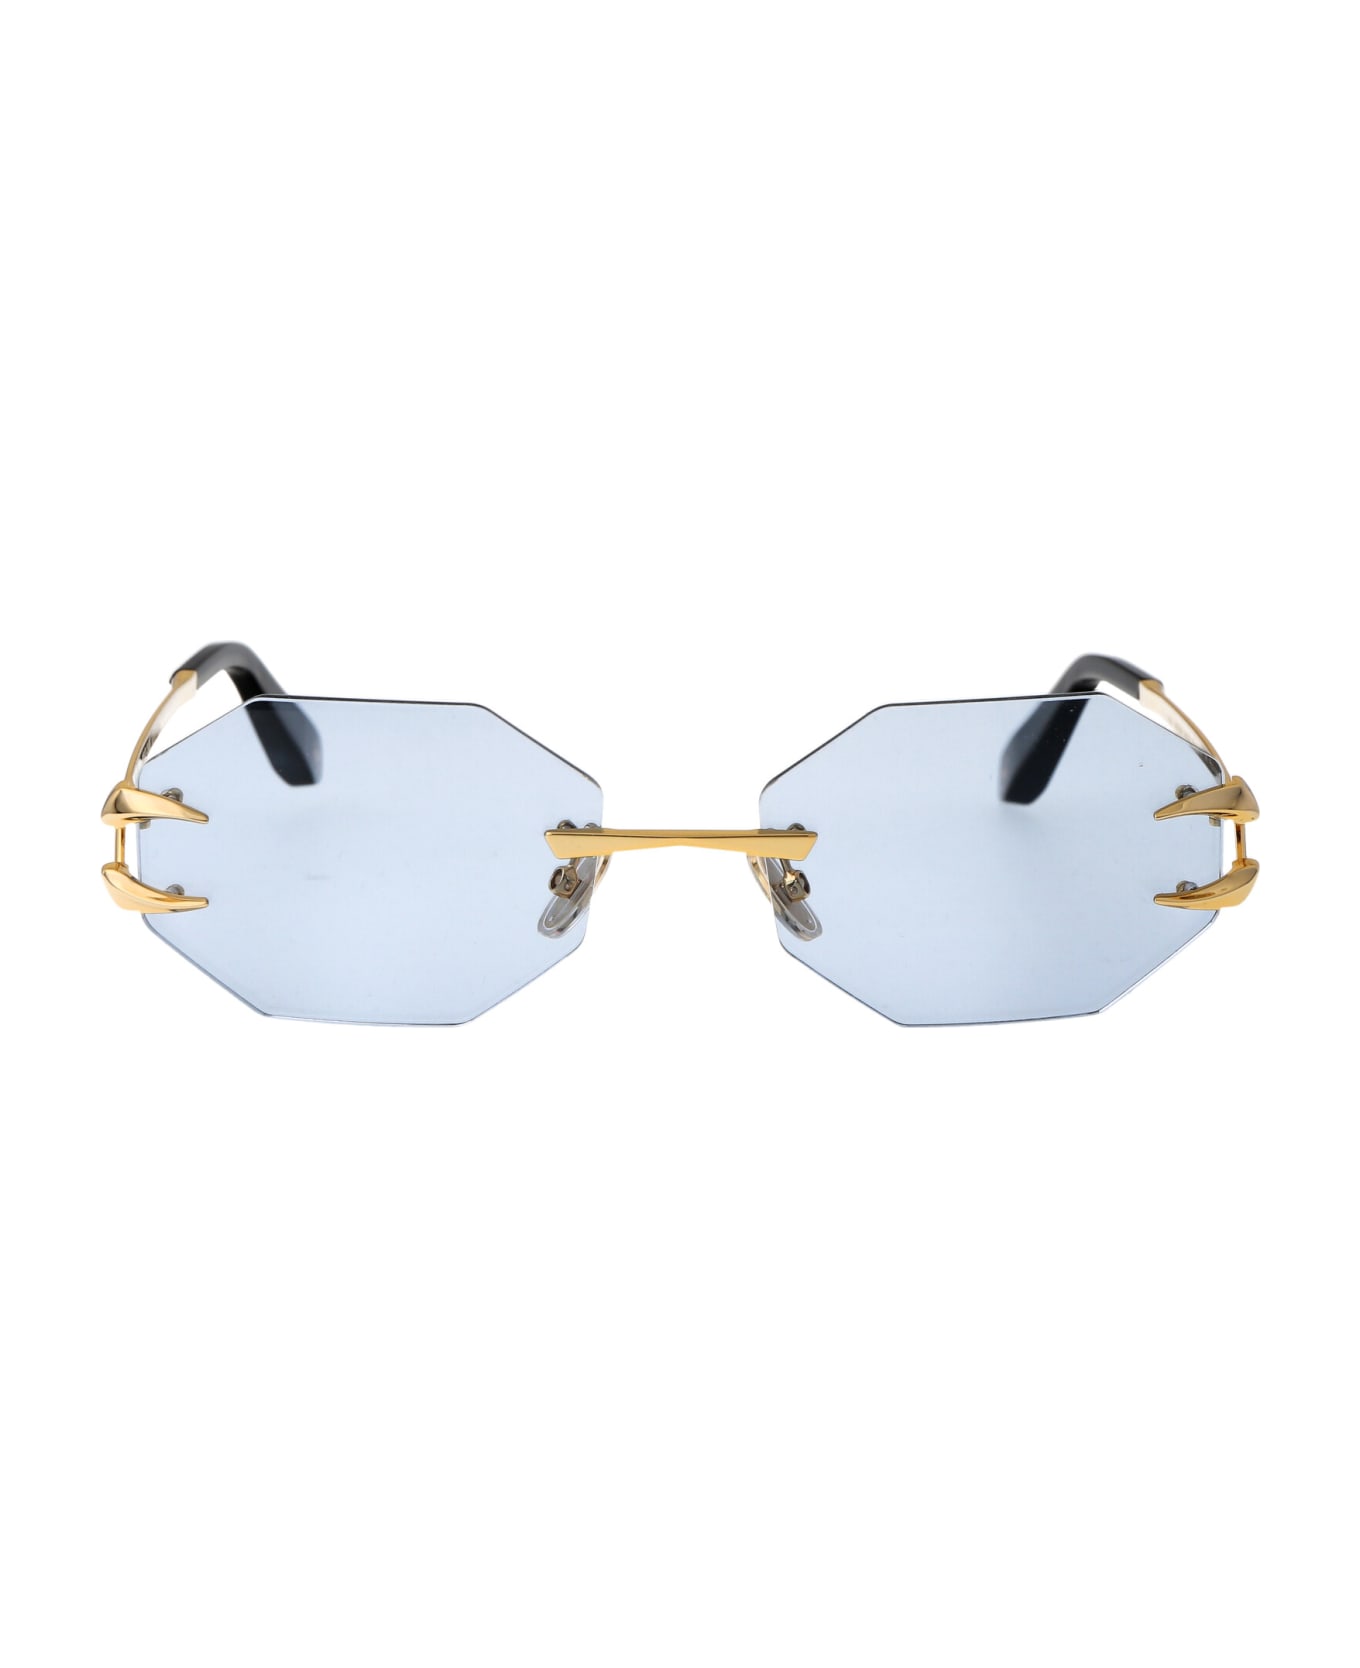 Roberto Cavalli Src005 Sunglasses - 400F GOLD